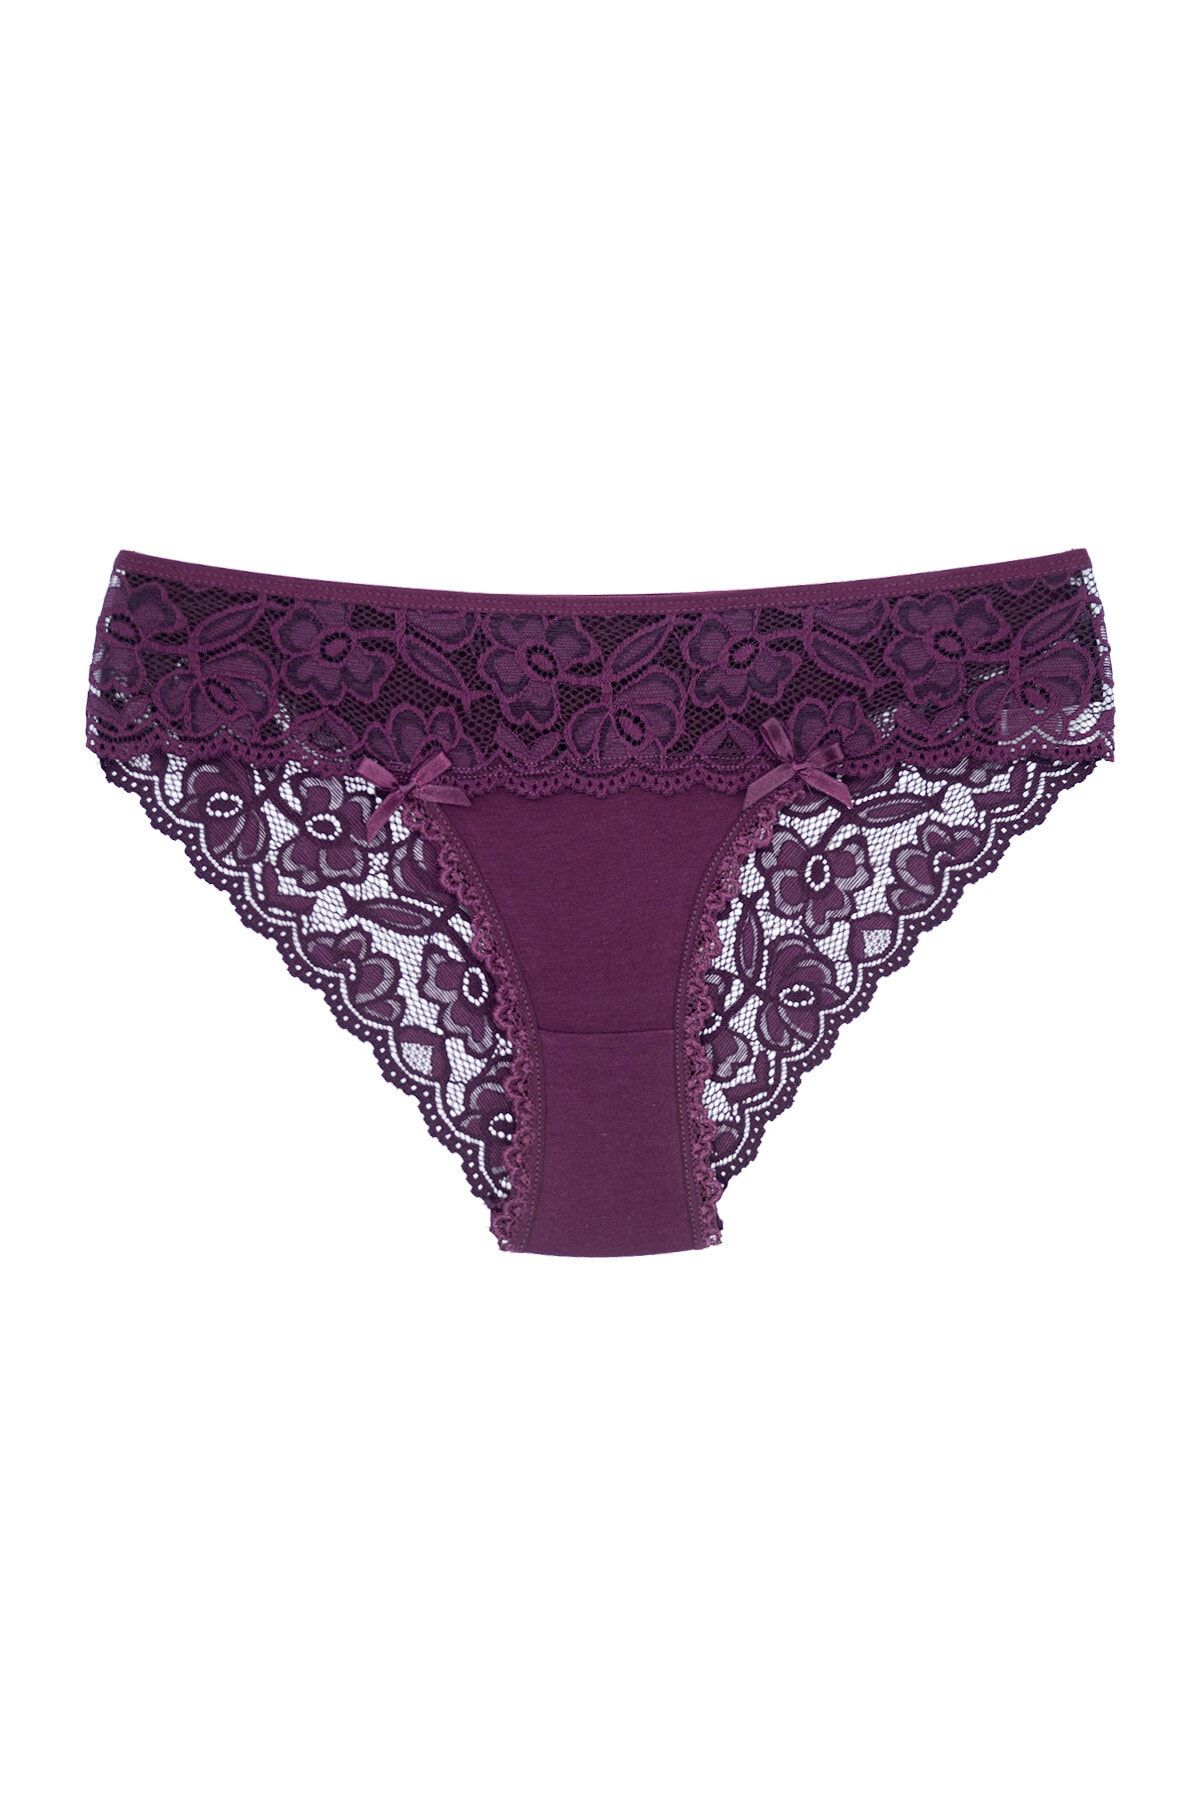 Purple Ladies Briefs, Cotton & Lace Briefs